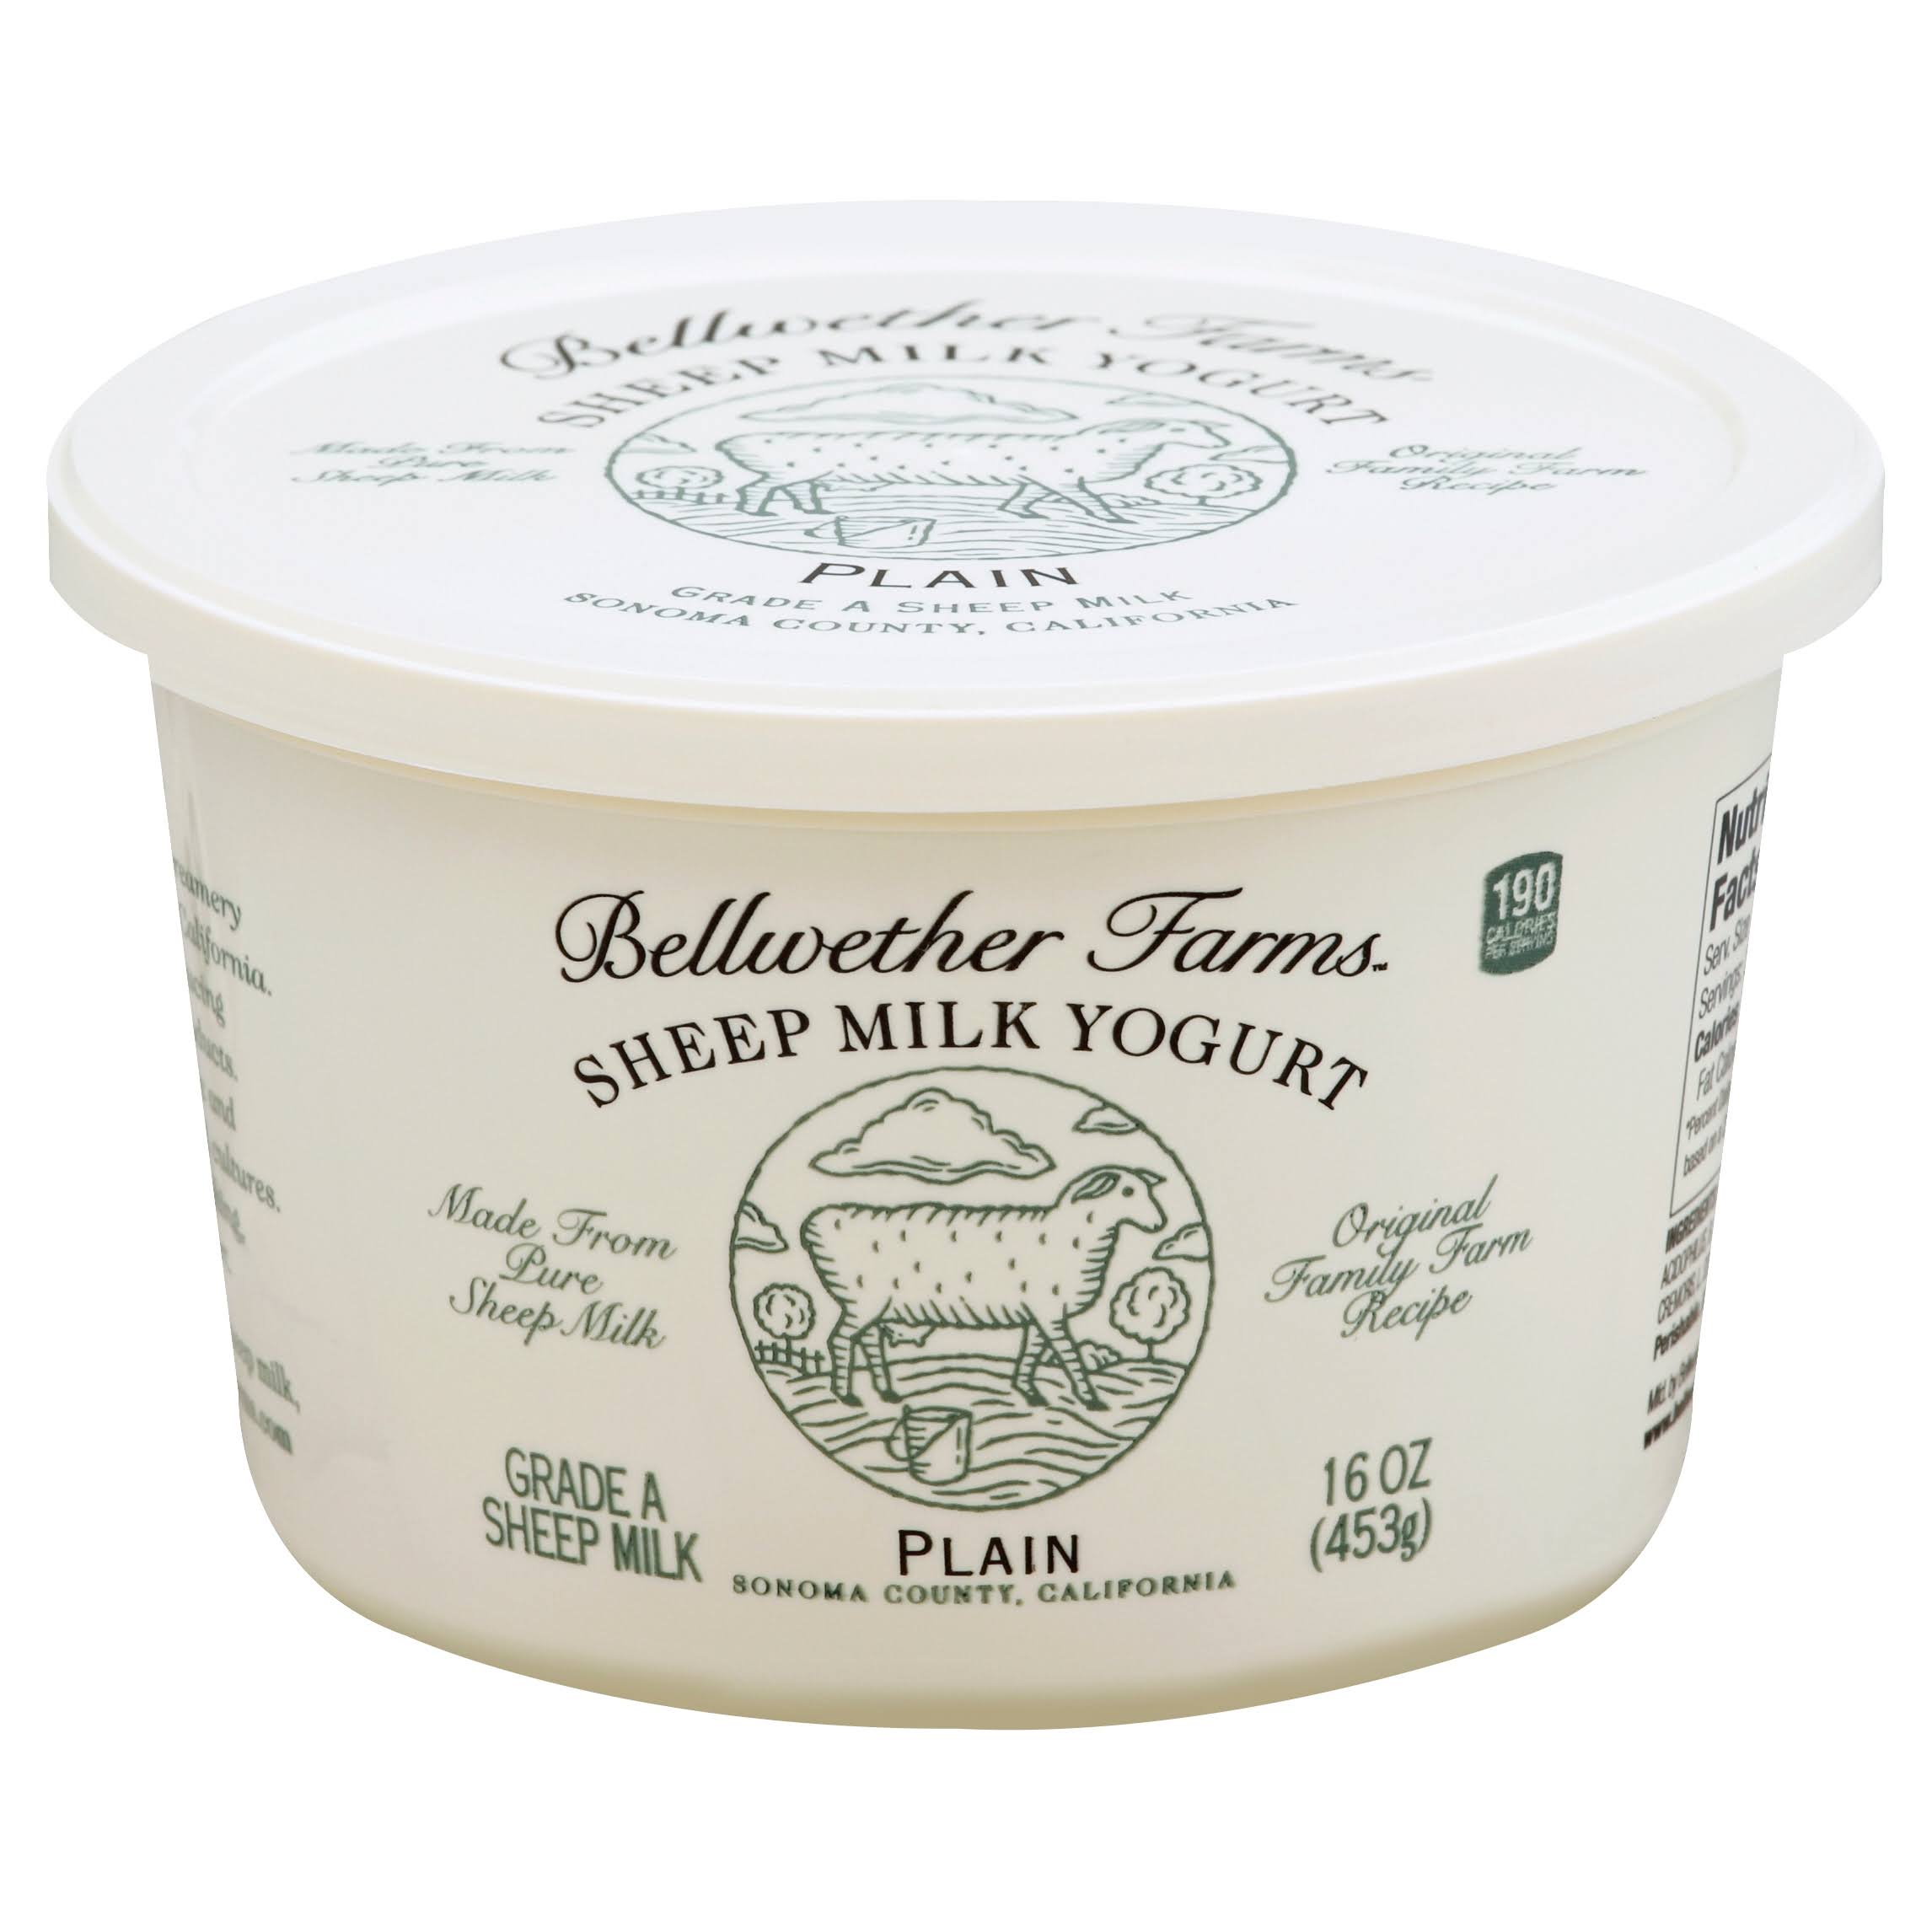 Bellwether Farms Sheep Milk Yogurt, Plain - 16 oz tub